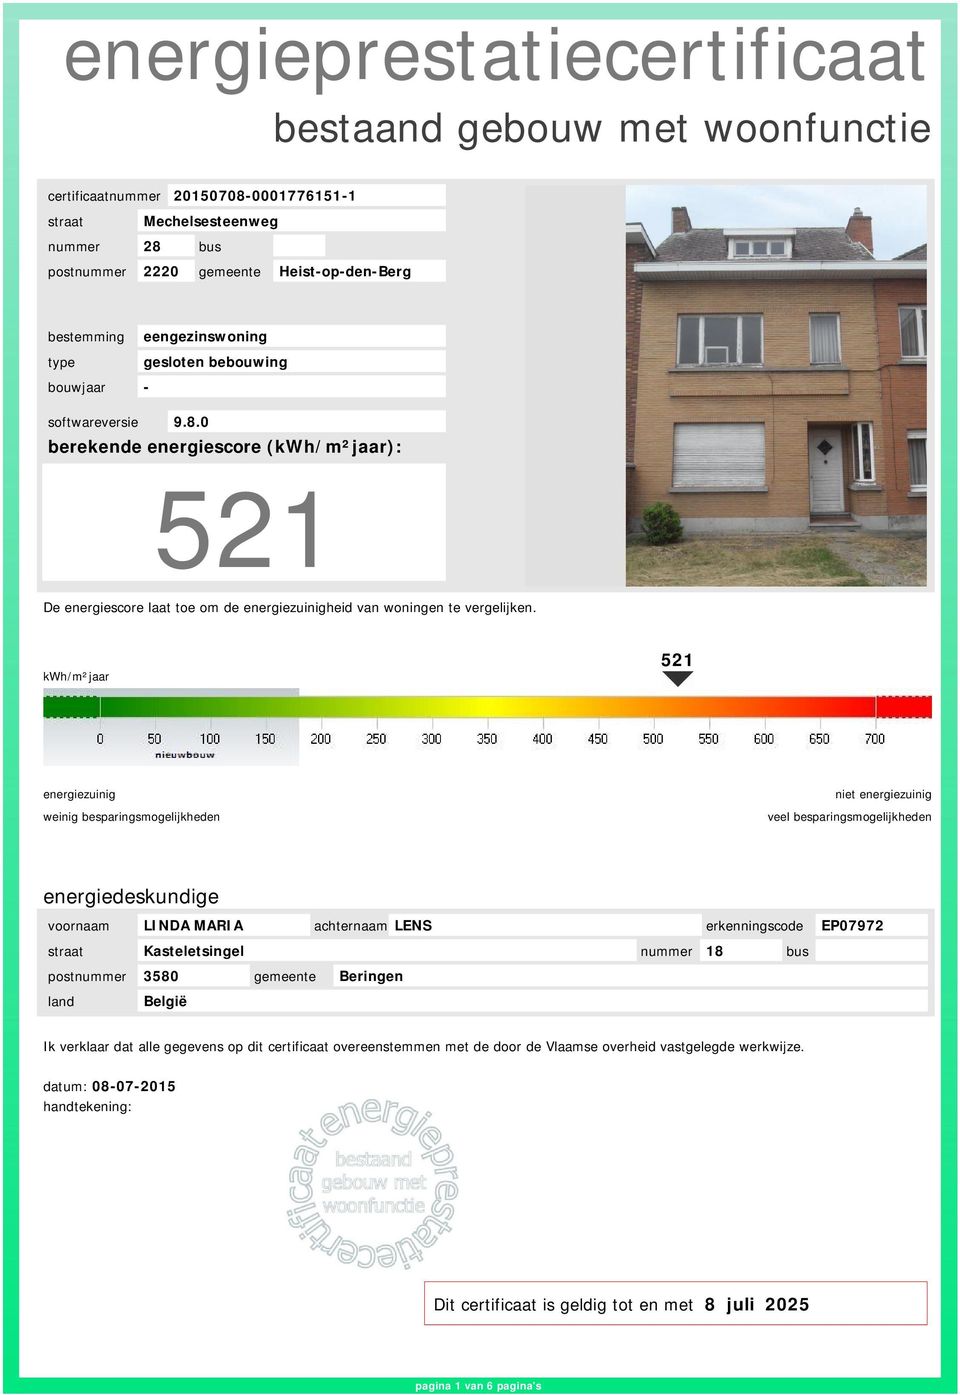 0 berekende energiescore (kwh/m²jaar): 521 De energiescore laat toe om de energiezuinigheid van woningen te vergelijken.